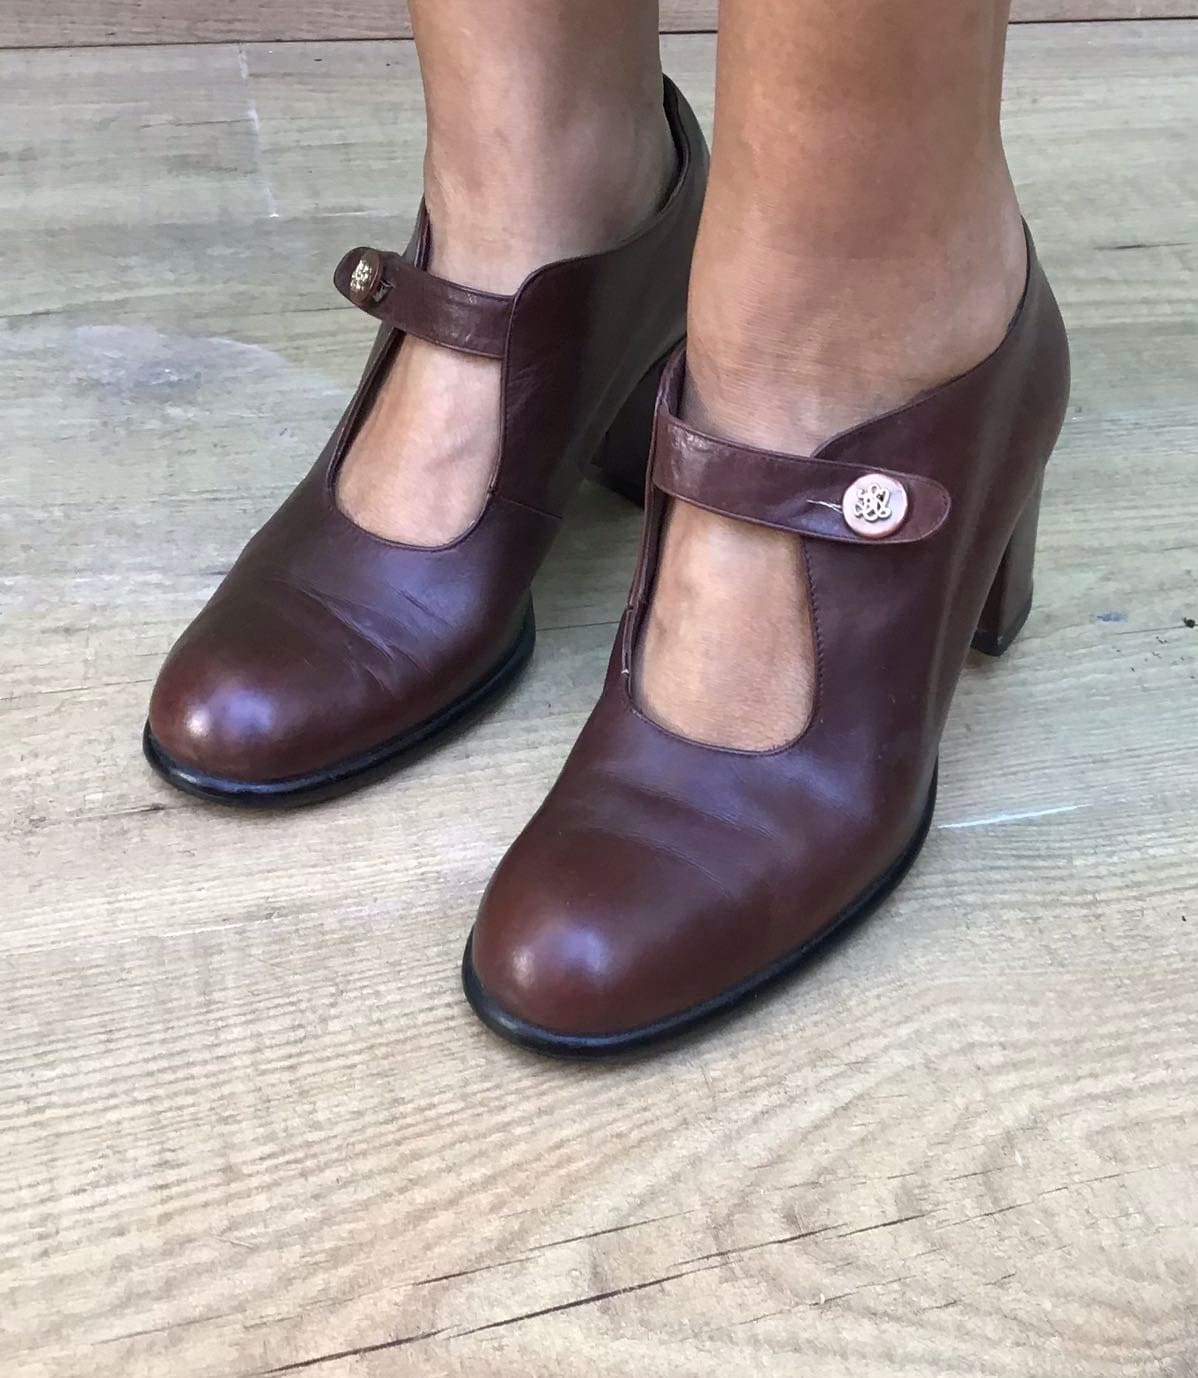 pastel beige echte leren schoenen met een bruine rand en dikke hak Schoenen damesschoenen Mary Janes Gemaakt door Cats Paw in de VS Maat 8 1/2 Zeldzame vintage jaren '70 